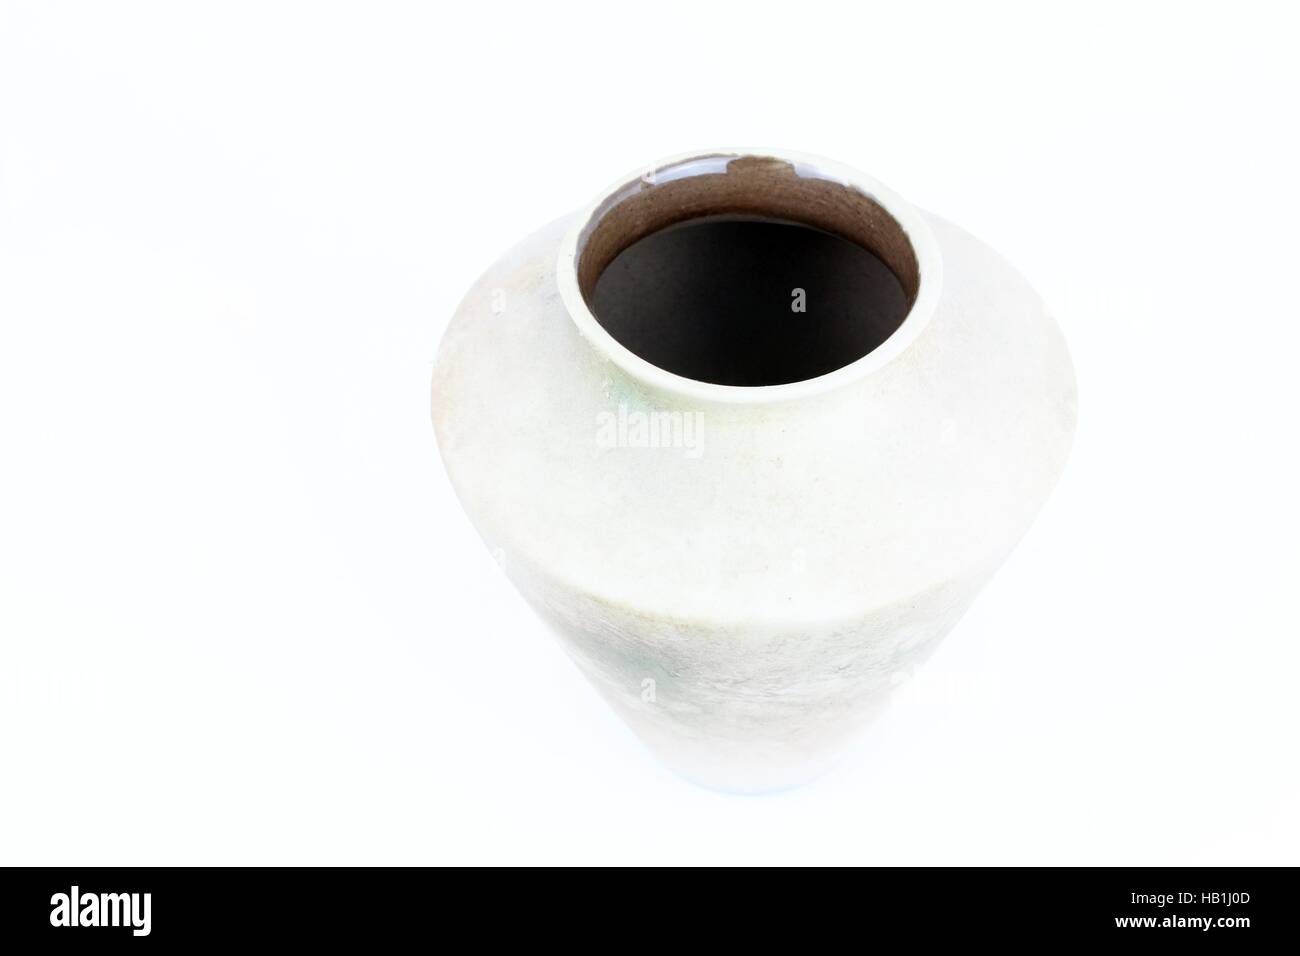 Vue détaillée de la partie supérieure de la céramique argile pitcher, fabriqué en Italie Banque D'Images